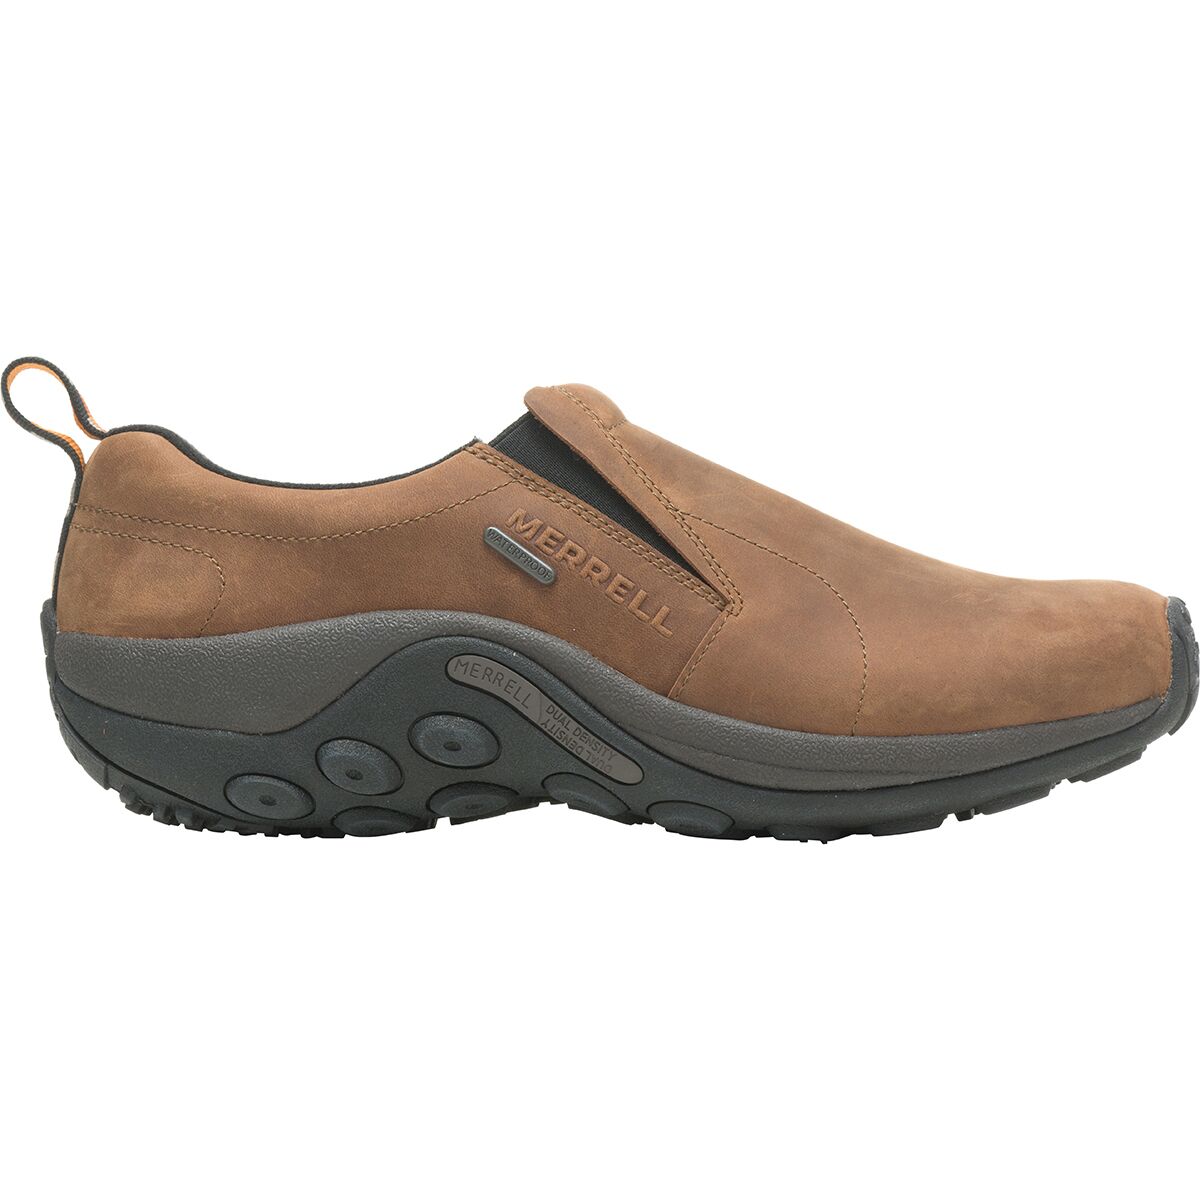 Merrell Jungle Moc Nubuck Waterproof Shoe - Men's - Footwear